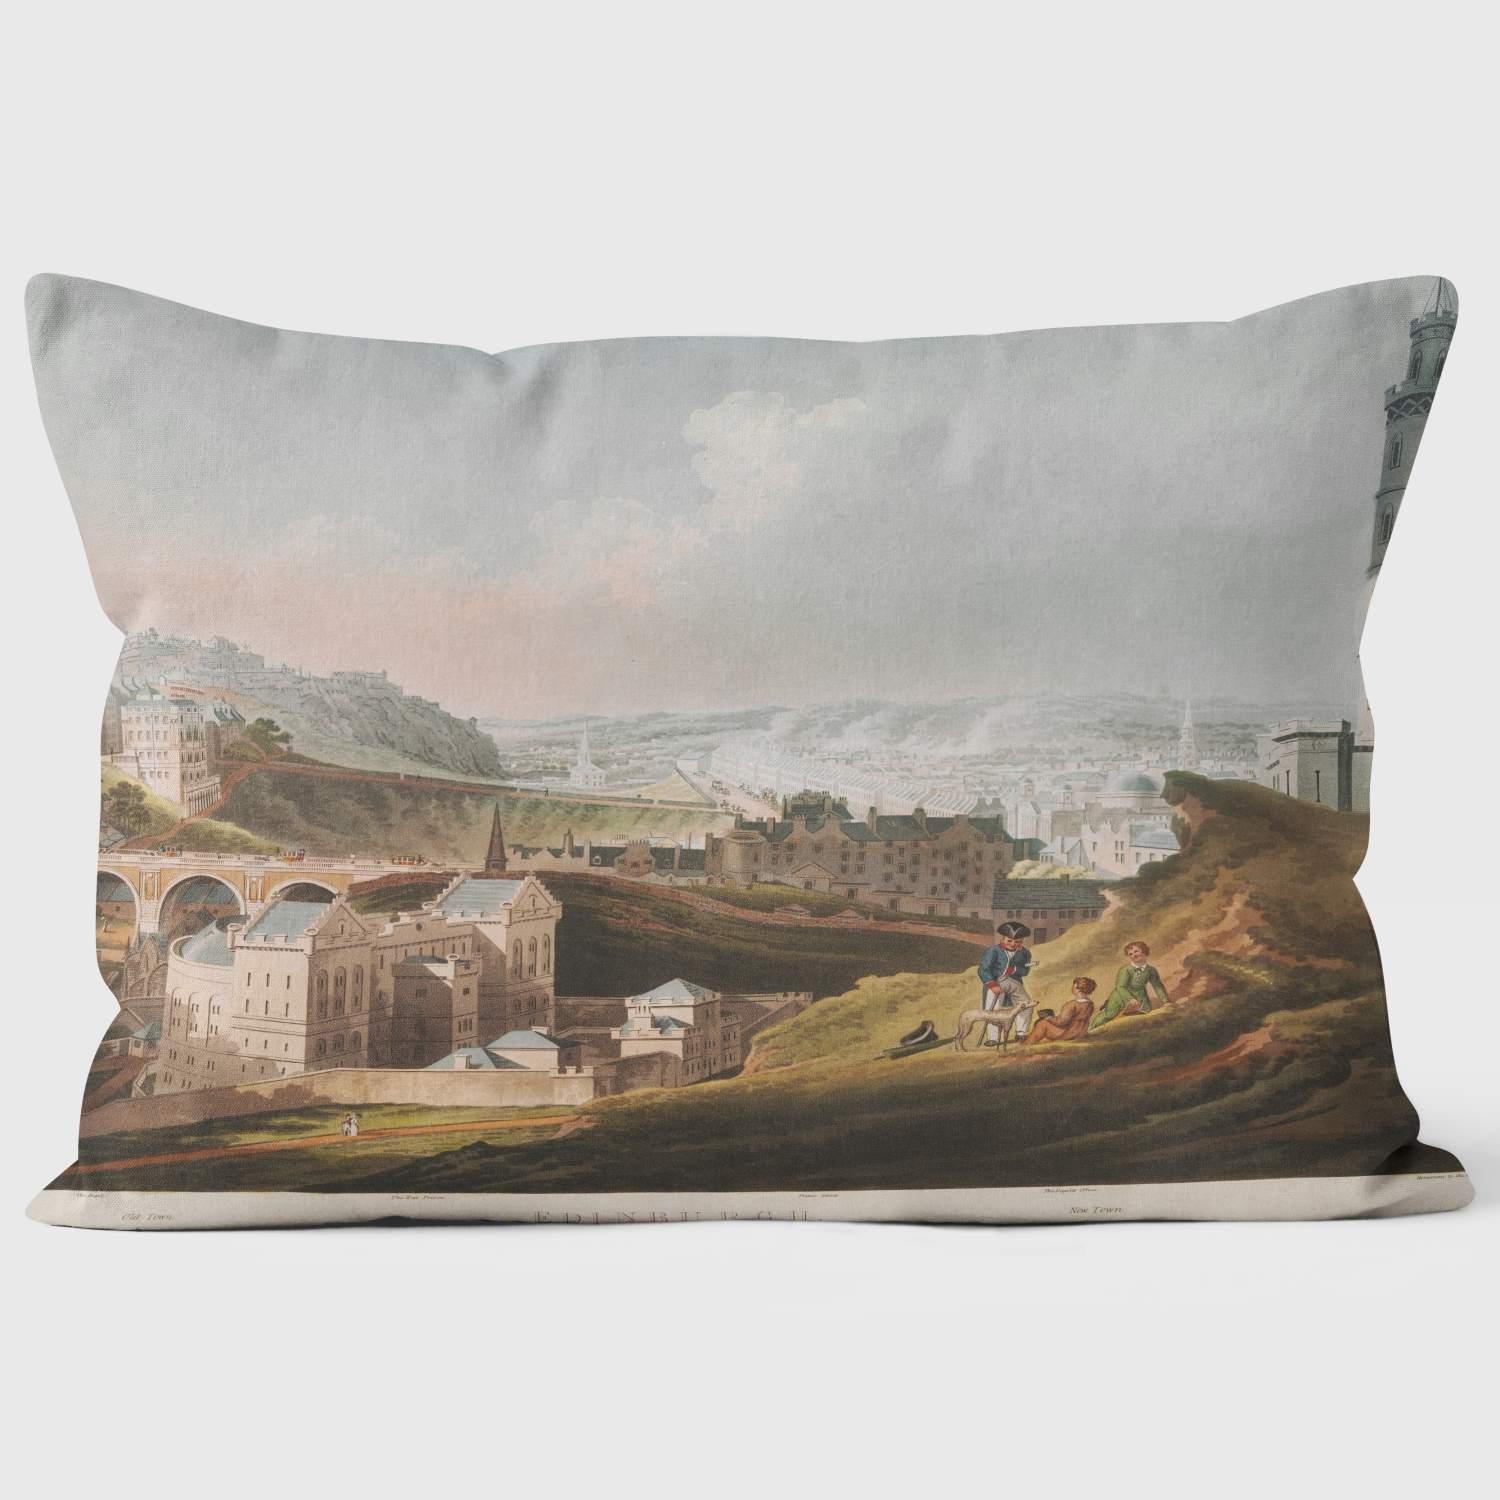 View Edinburgh - British Library Cushions - Handmade Cushions UK - WeLoveCushions